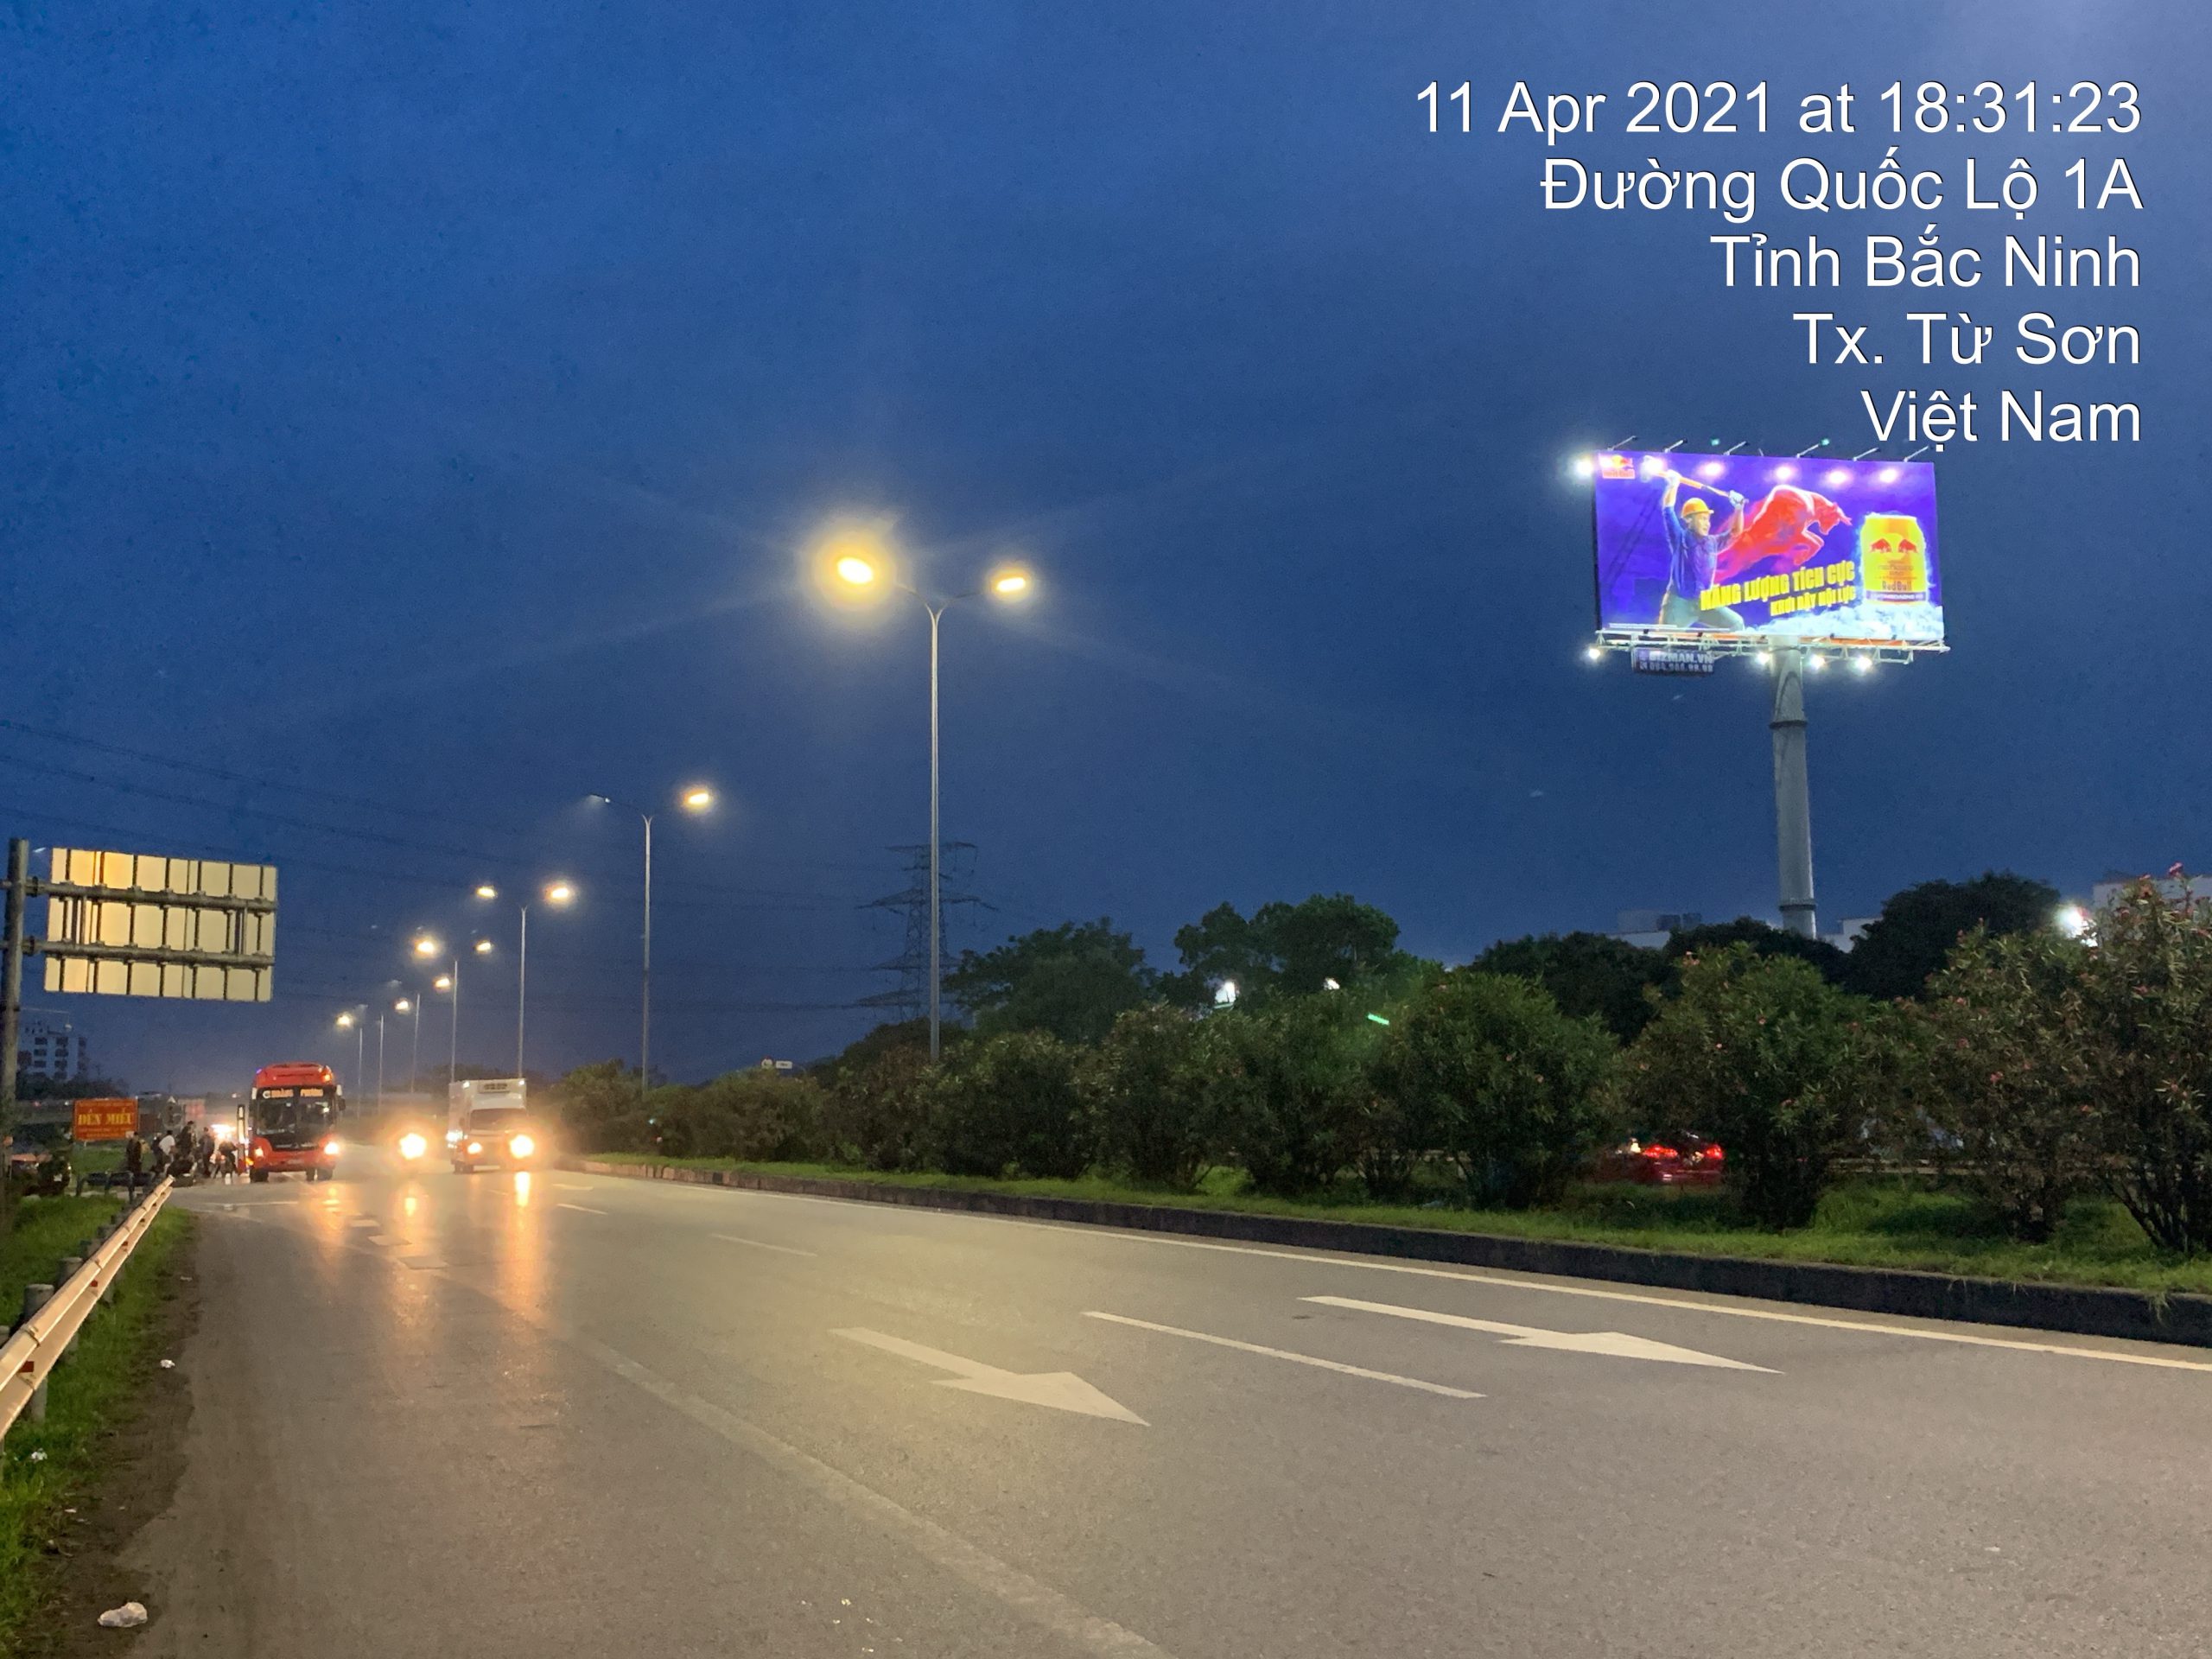 Bảng quảng cáo quốc lộ 1A – Hà Nội - Lạng Sơn – H7/148